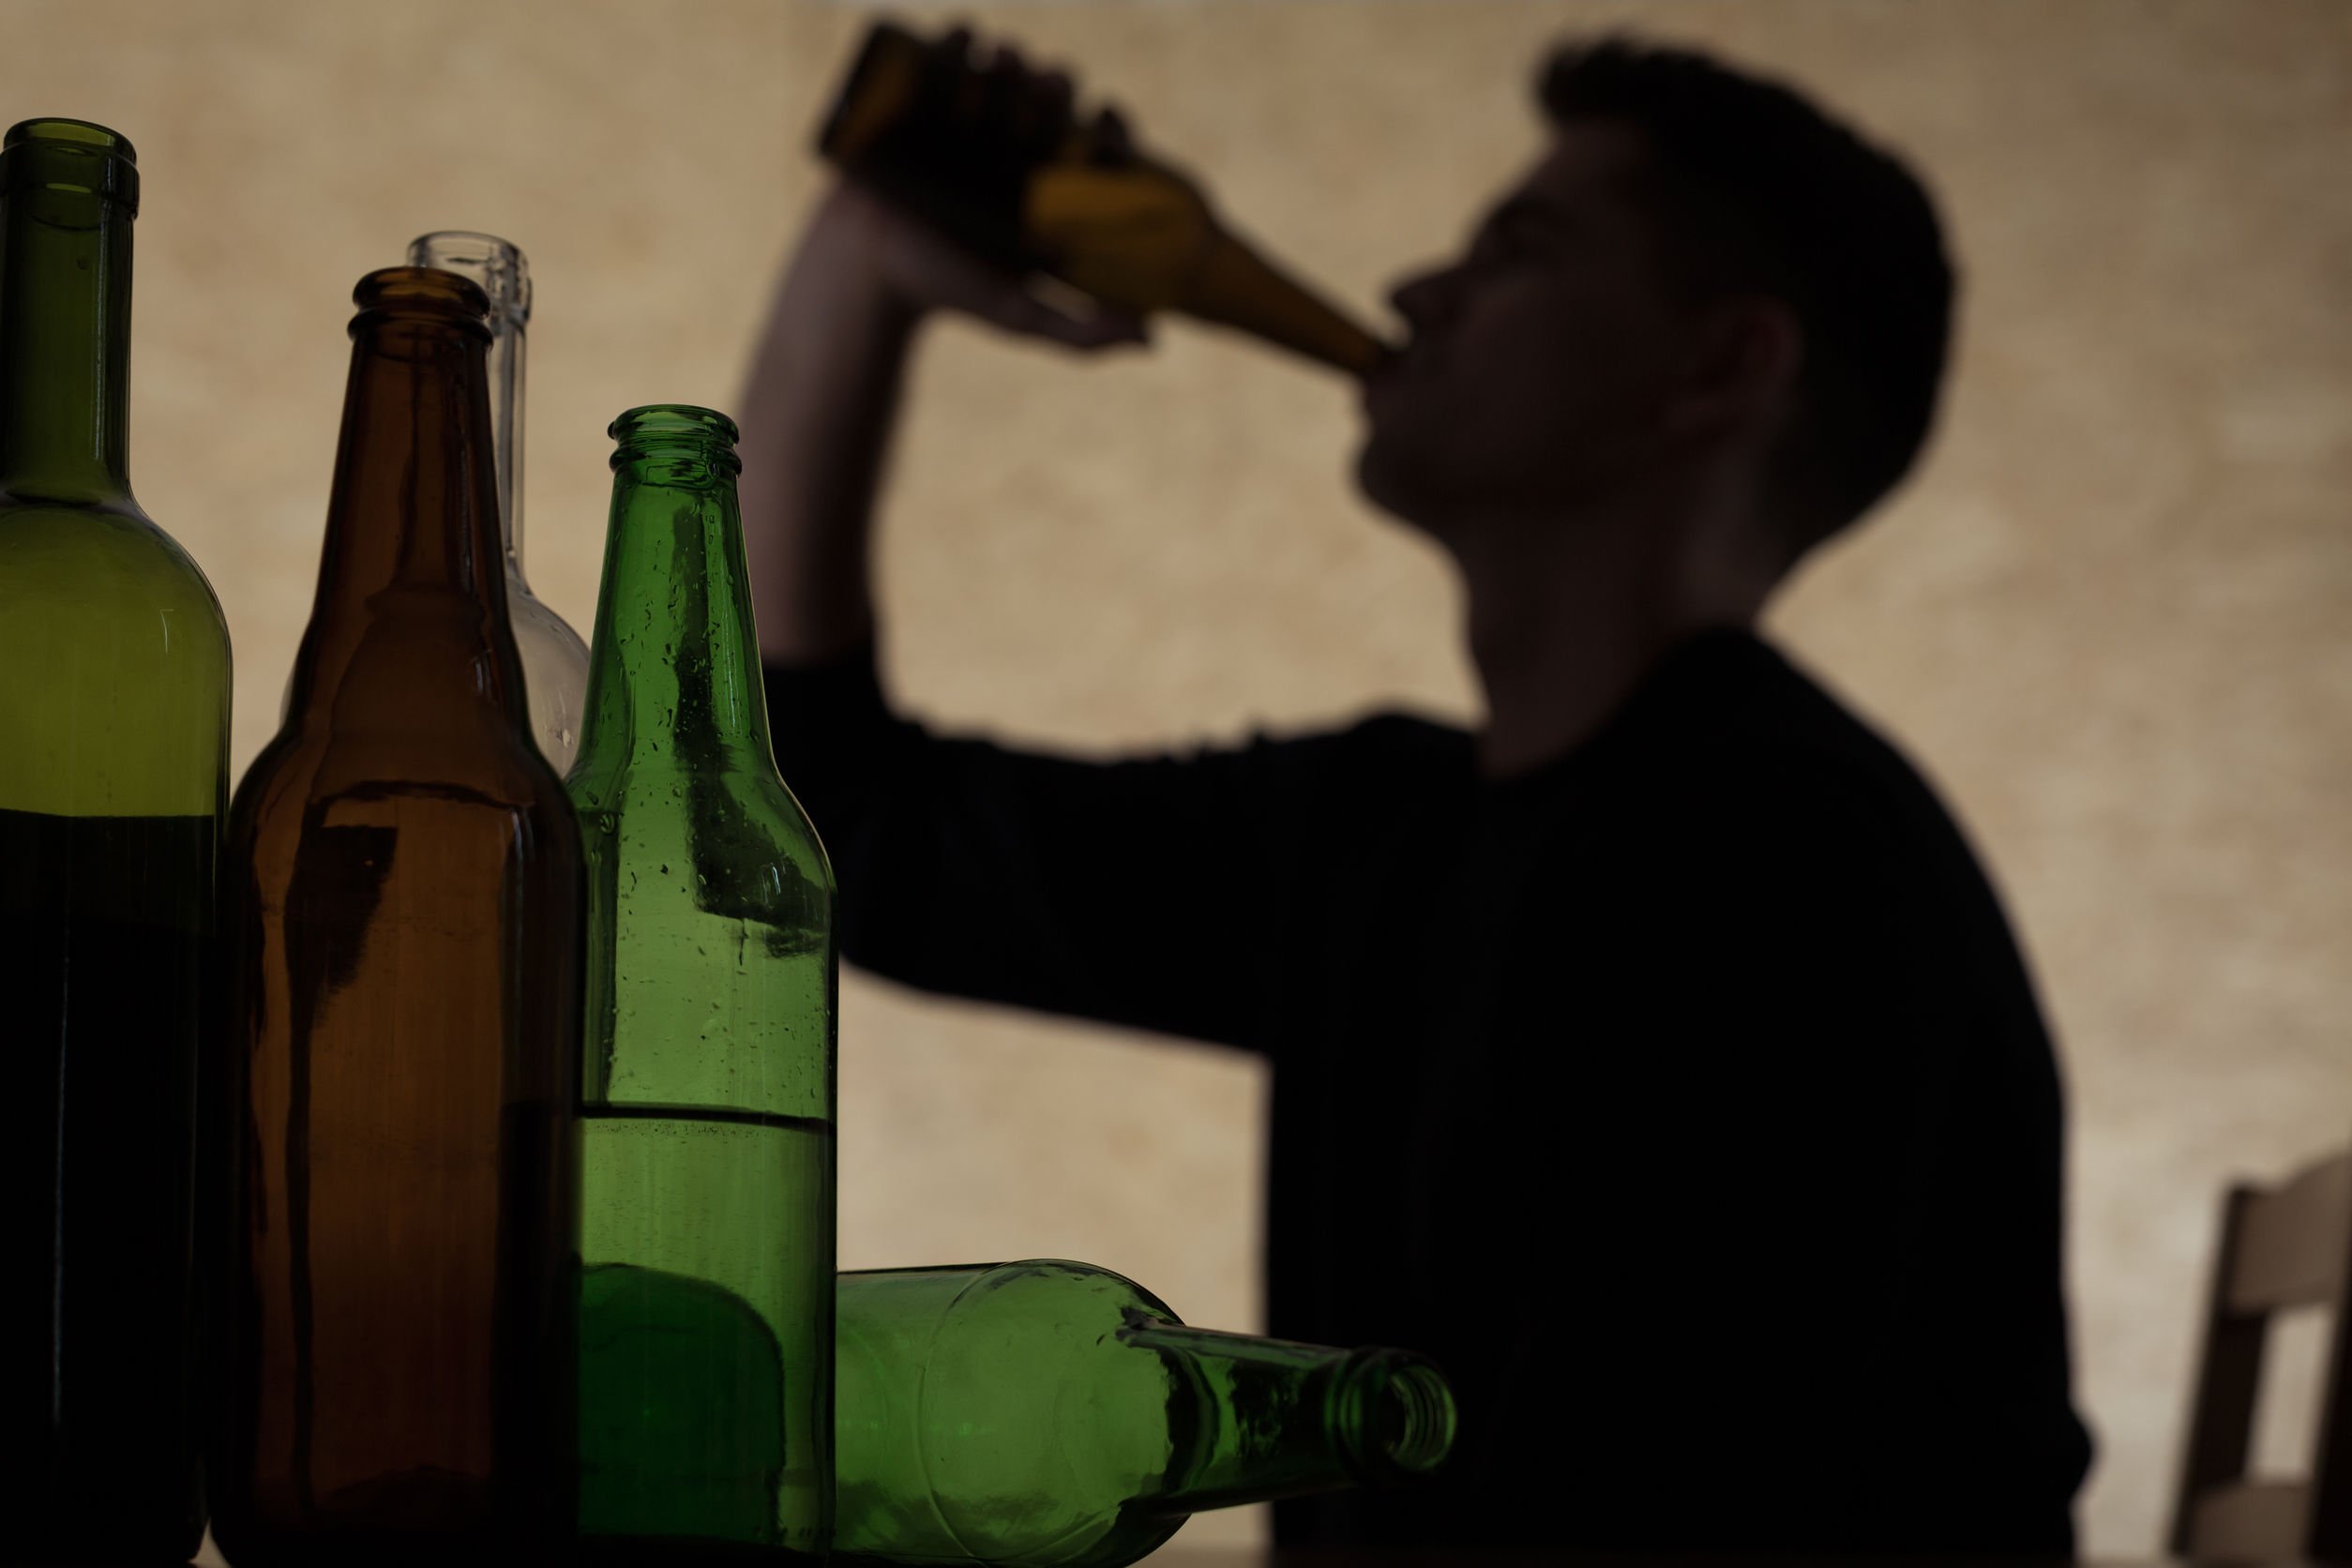 Sombra de um homem tomando bebida na garrafa